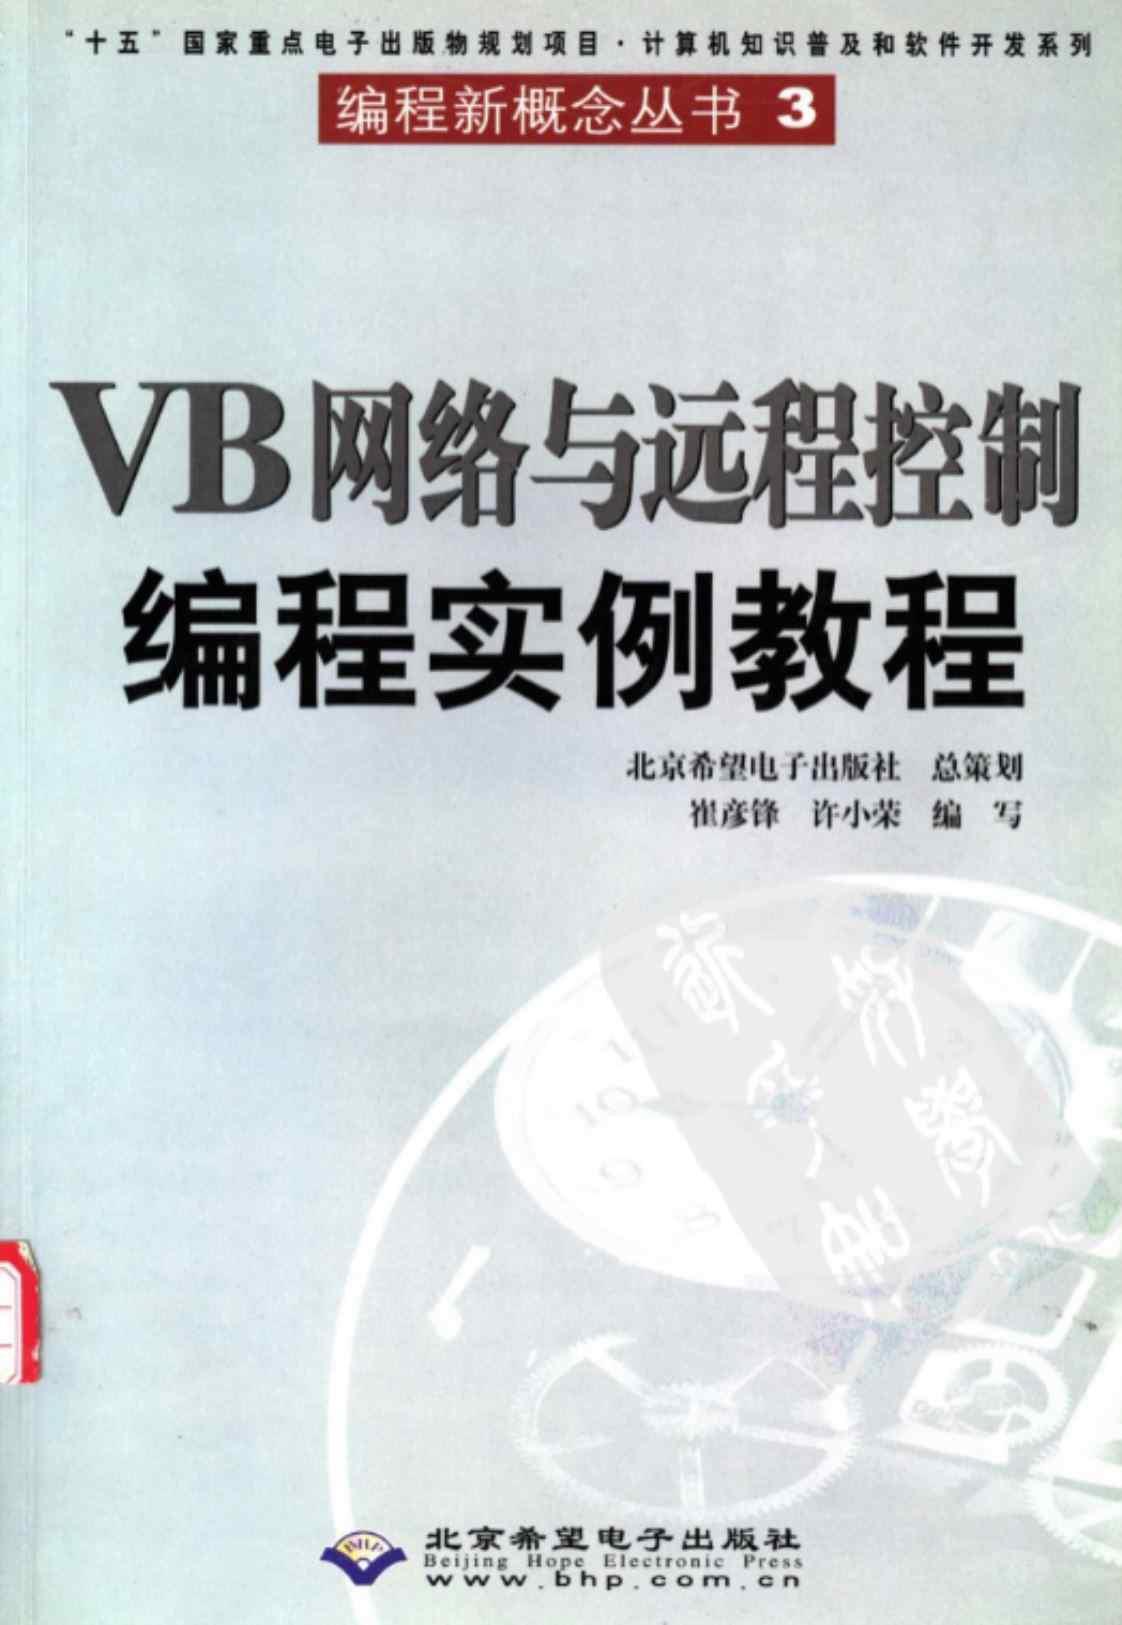 [VB网络与远程控制编程实例教程]高清PDF电子书